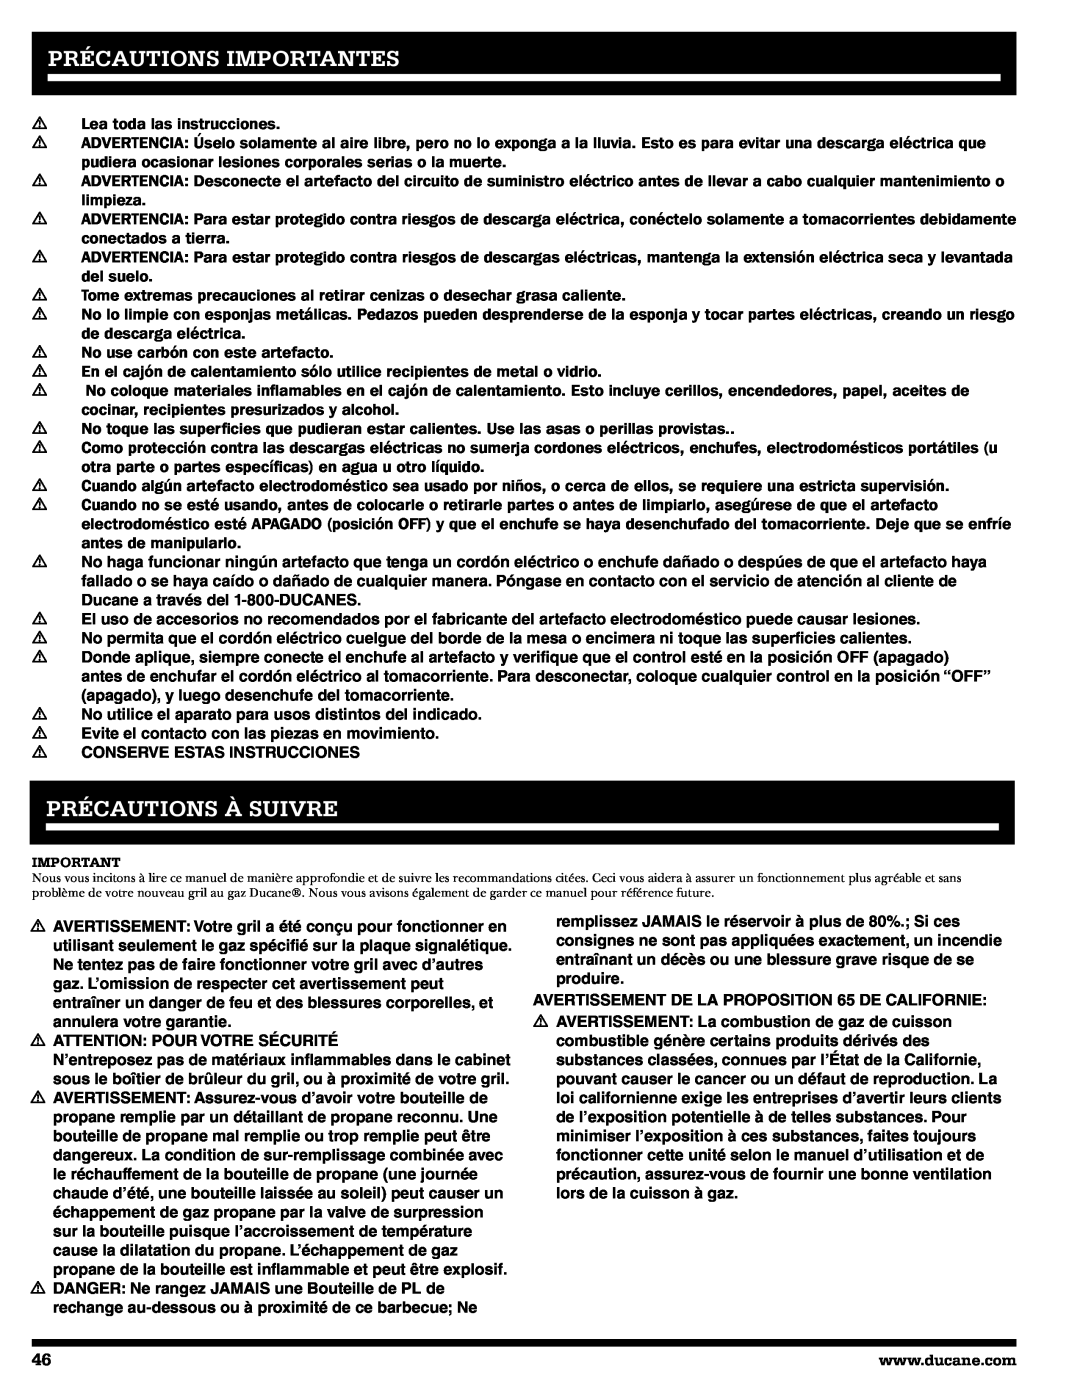 Ducane 2020805 owner manual Précautions Importantes, Précautions À Suivre 